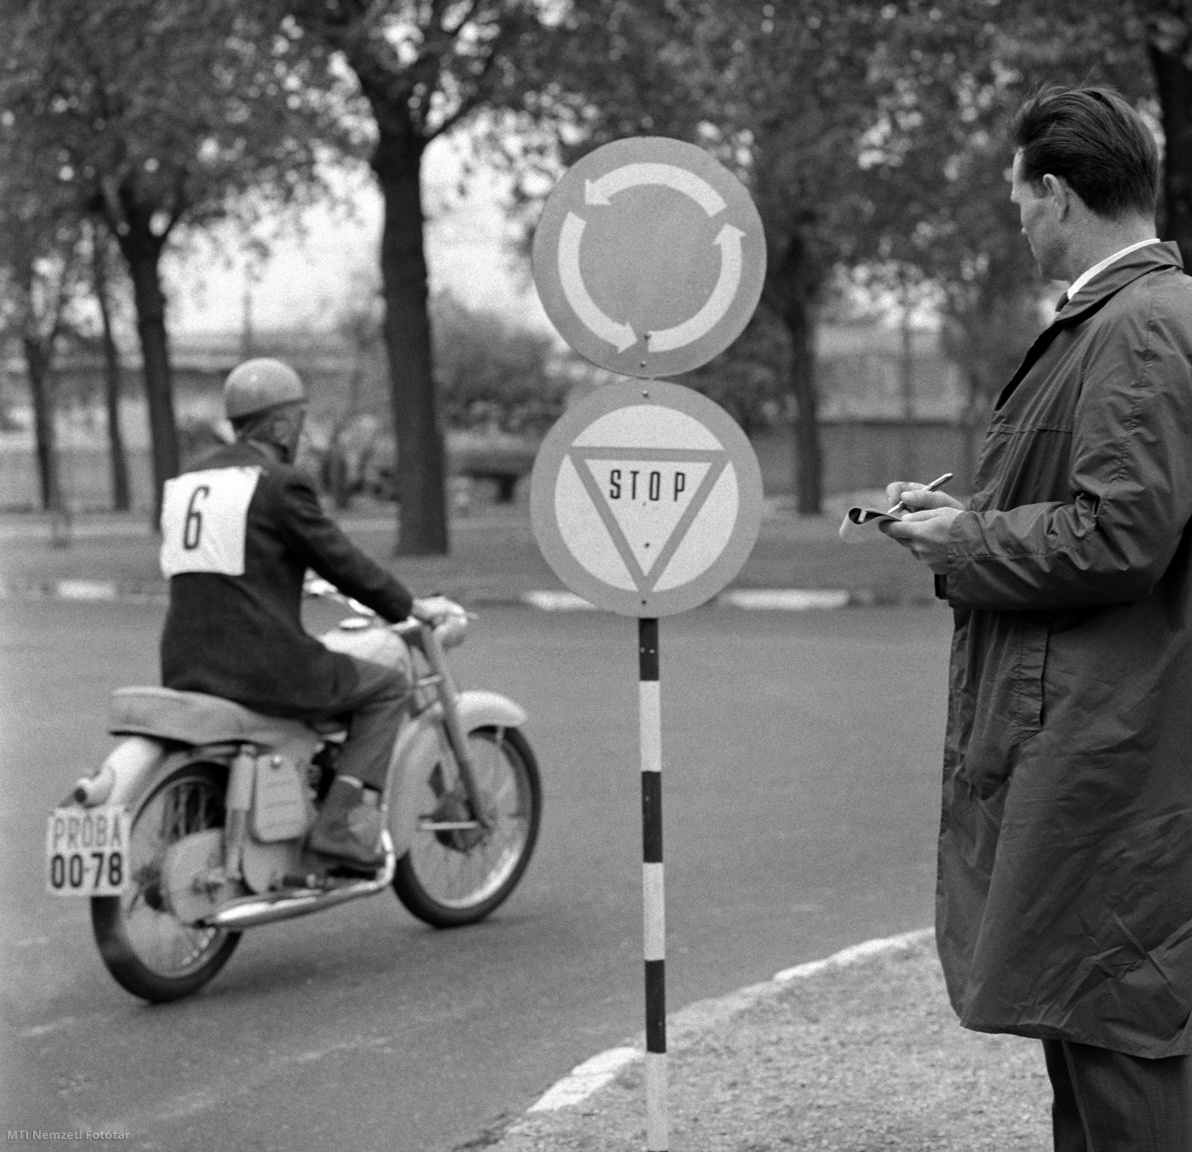 Budapest, 1965. május 21. Vizsgázó motorkerékpáros jelzőtáblákra való reagálását figyeli a vizsgabizottság tagja a népligeti vizsgapályán. A motorkerékpárosok eddig az elméleti vizsgák után csak igen egyszerű, ún. biztonsági feladatot oldottak meg a vizsgán. A KPM Autóközlekedési tanintézet új vizsgarendszerén egy 2 km-es vizsgapályán kell áthaladniuk. Ezen az útszakaszon megtalálhatók mindazok az útelemek, amelyek a közlekedésben a legfontosabbak. A vizsgabizottság figyeli a motorkerékpáros reagálását a jelzőtáblák és egyéb útelemek észlelésekor és csak jól képzett vezetőket engednek részt venni a forgalomban.